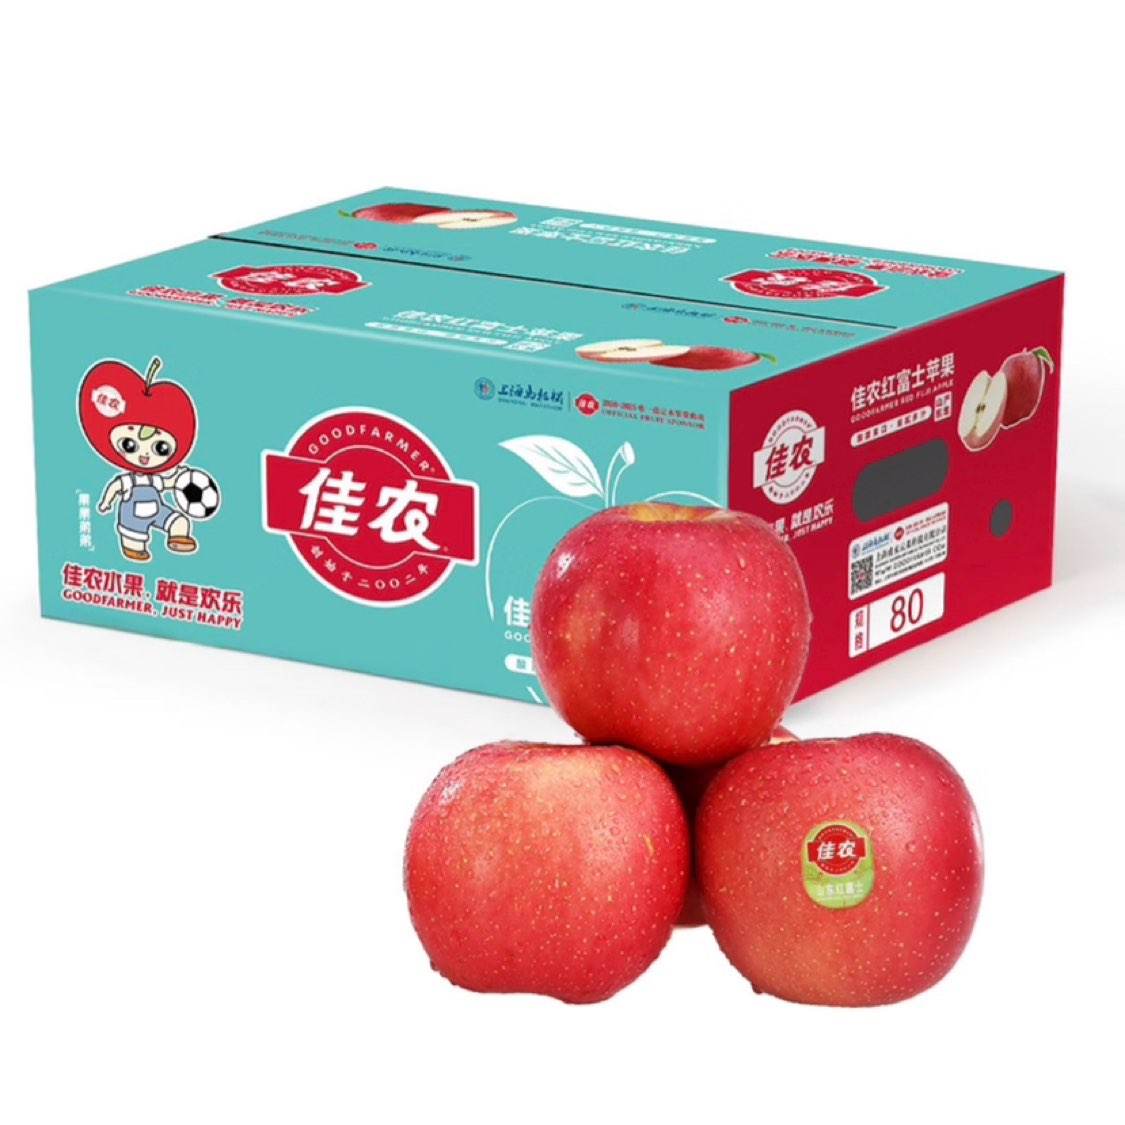 佳农 烟台红富士苹果5kg（单果重190g以上） 59.9元包邮